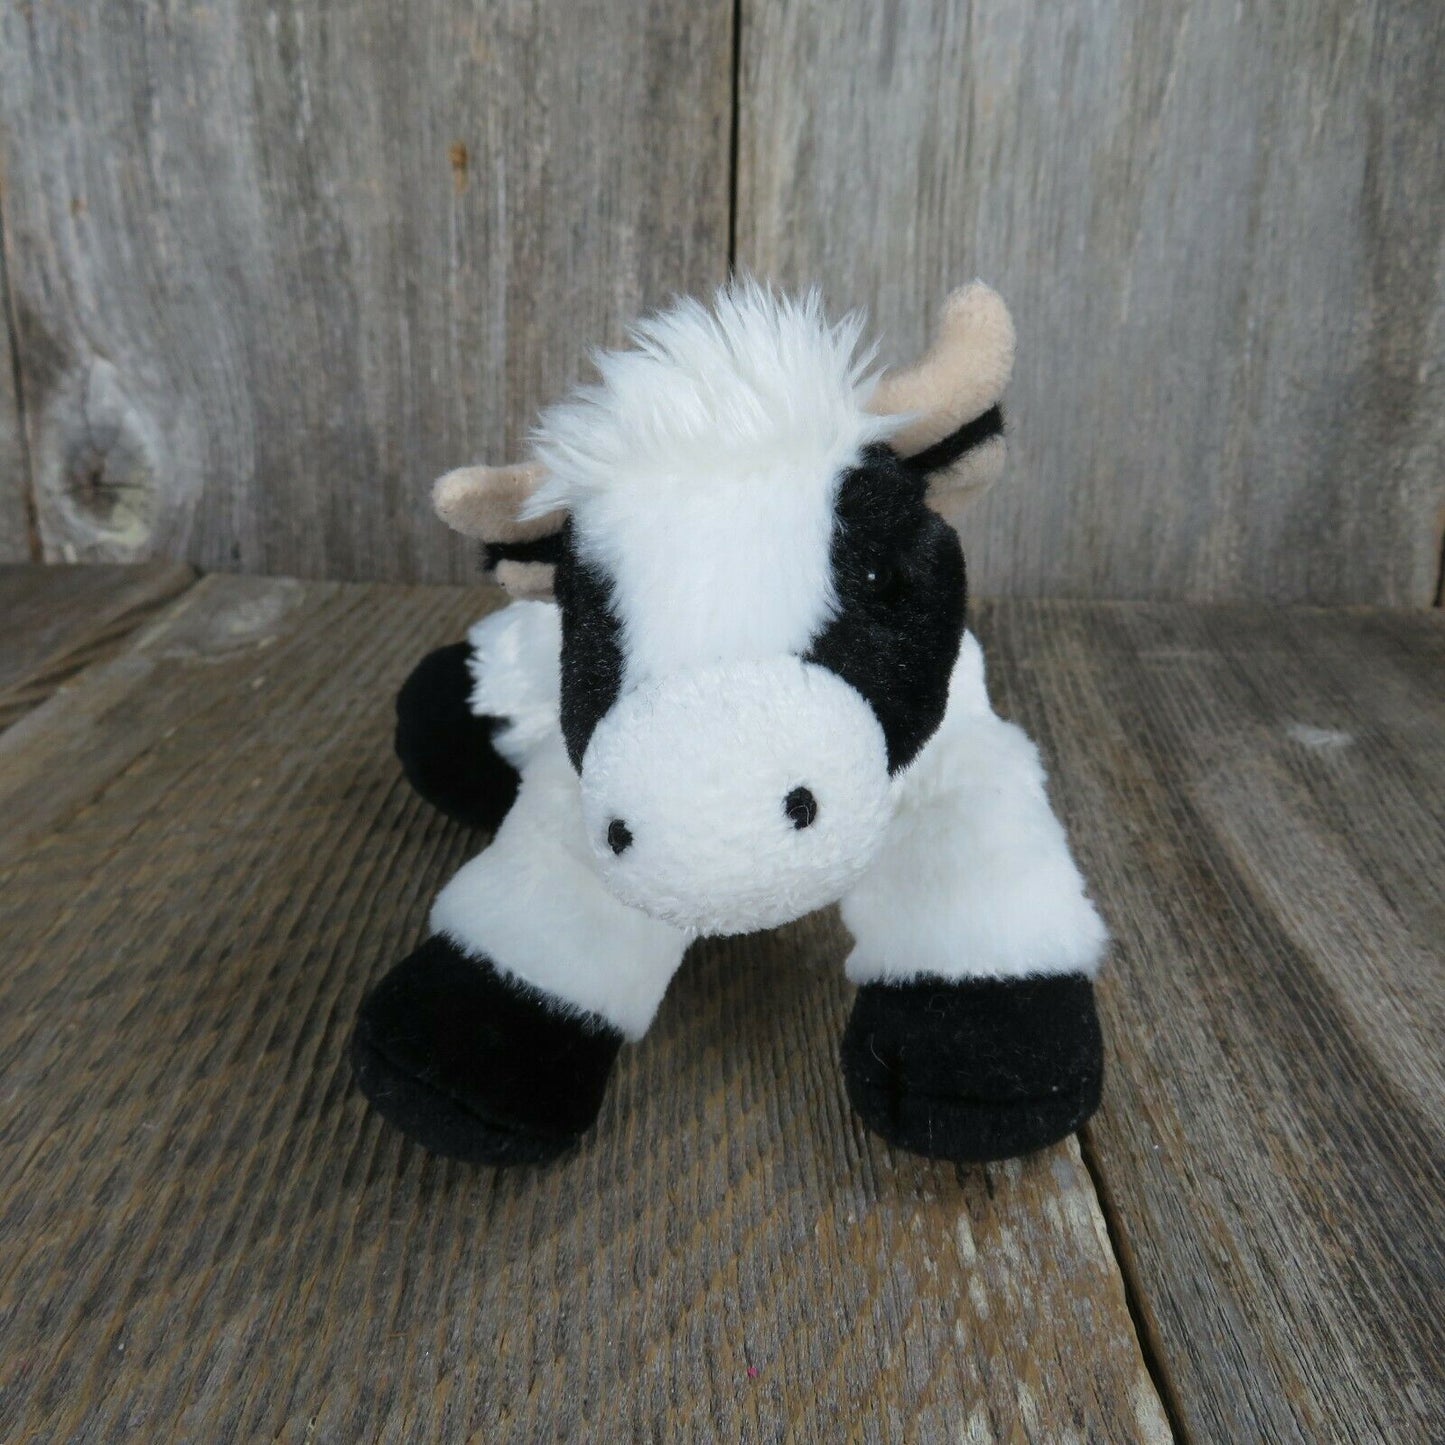 Cow Plush Black and White Mini Moo Flopsie Aurora Stuffed Animal 2016